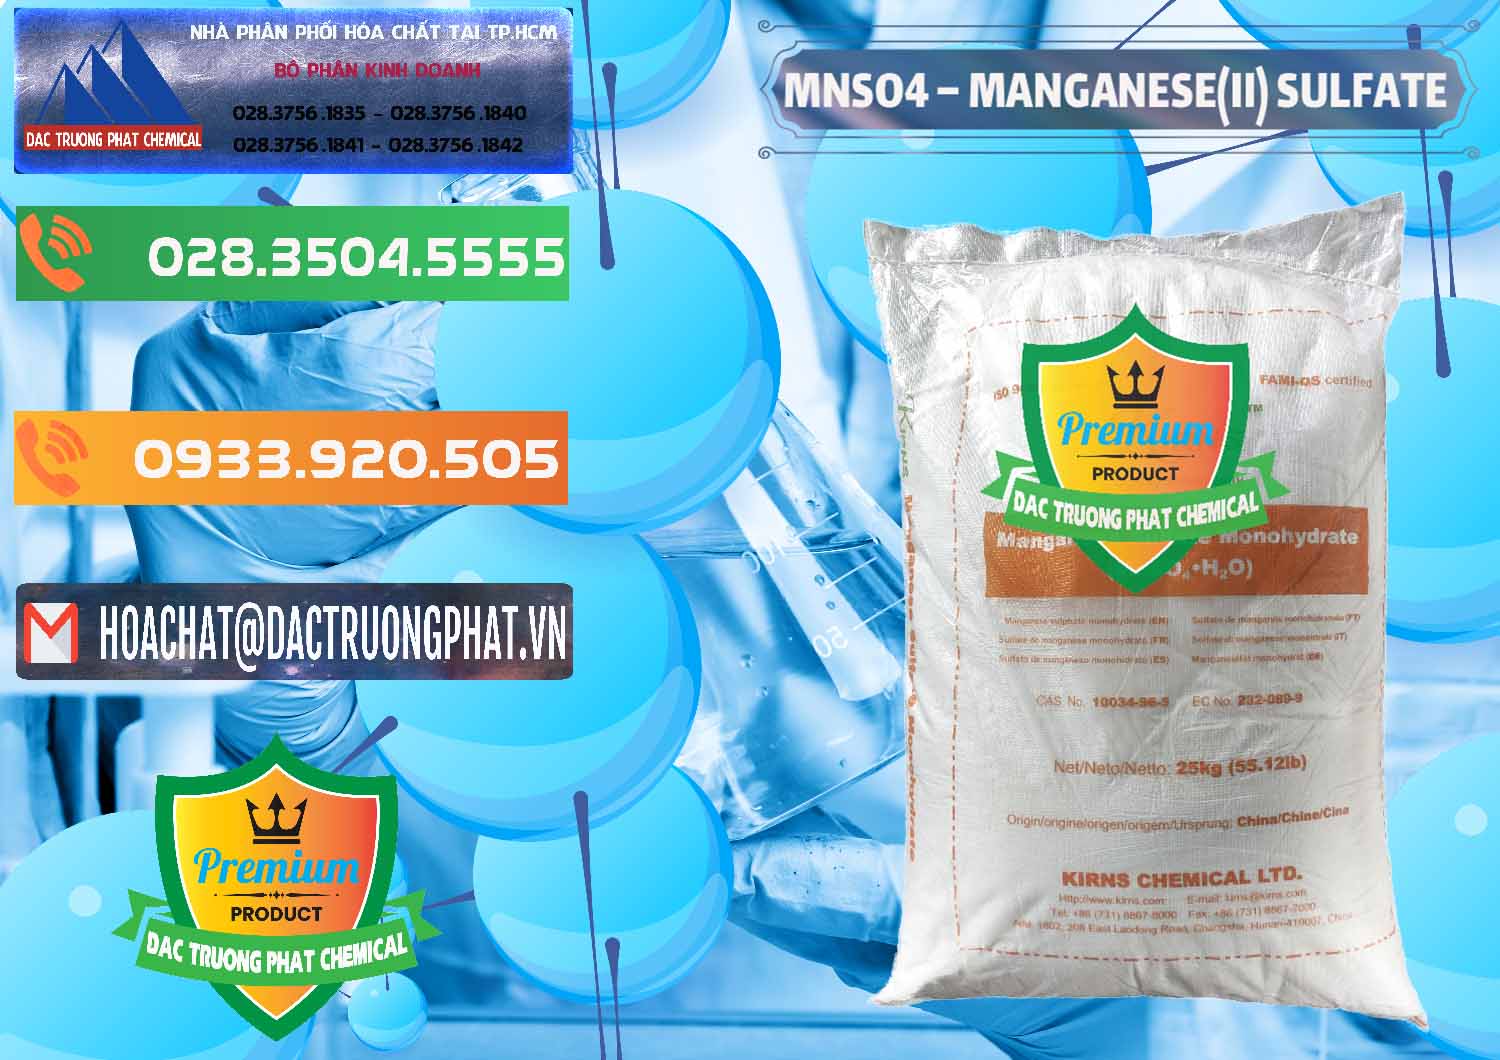 Phân phối - bán MNSO4 – Manganese (II) Sulfate Kirns Trung Quốc China - 0095 - Cty cung cấp và nhập khẩu hóa chất tại TP.HCM - hoachatxulynuoc.com.vn